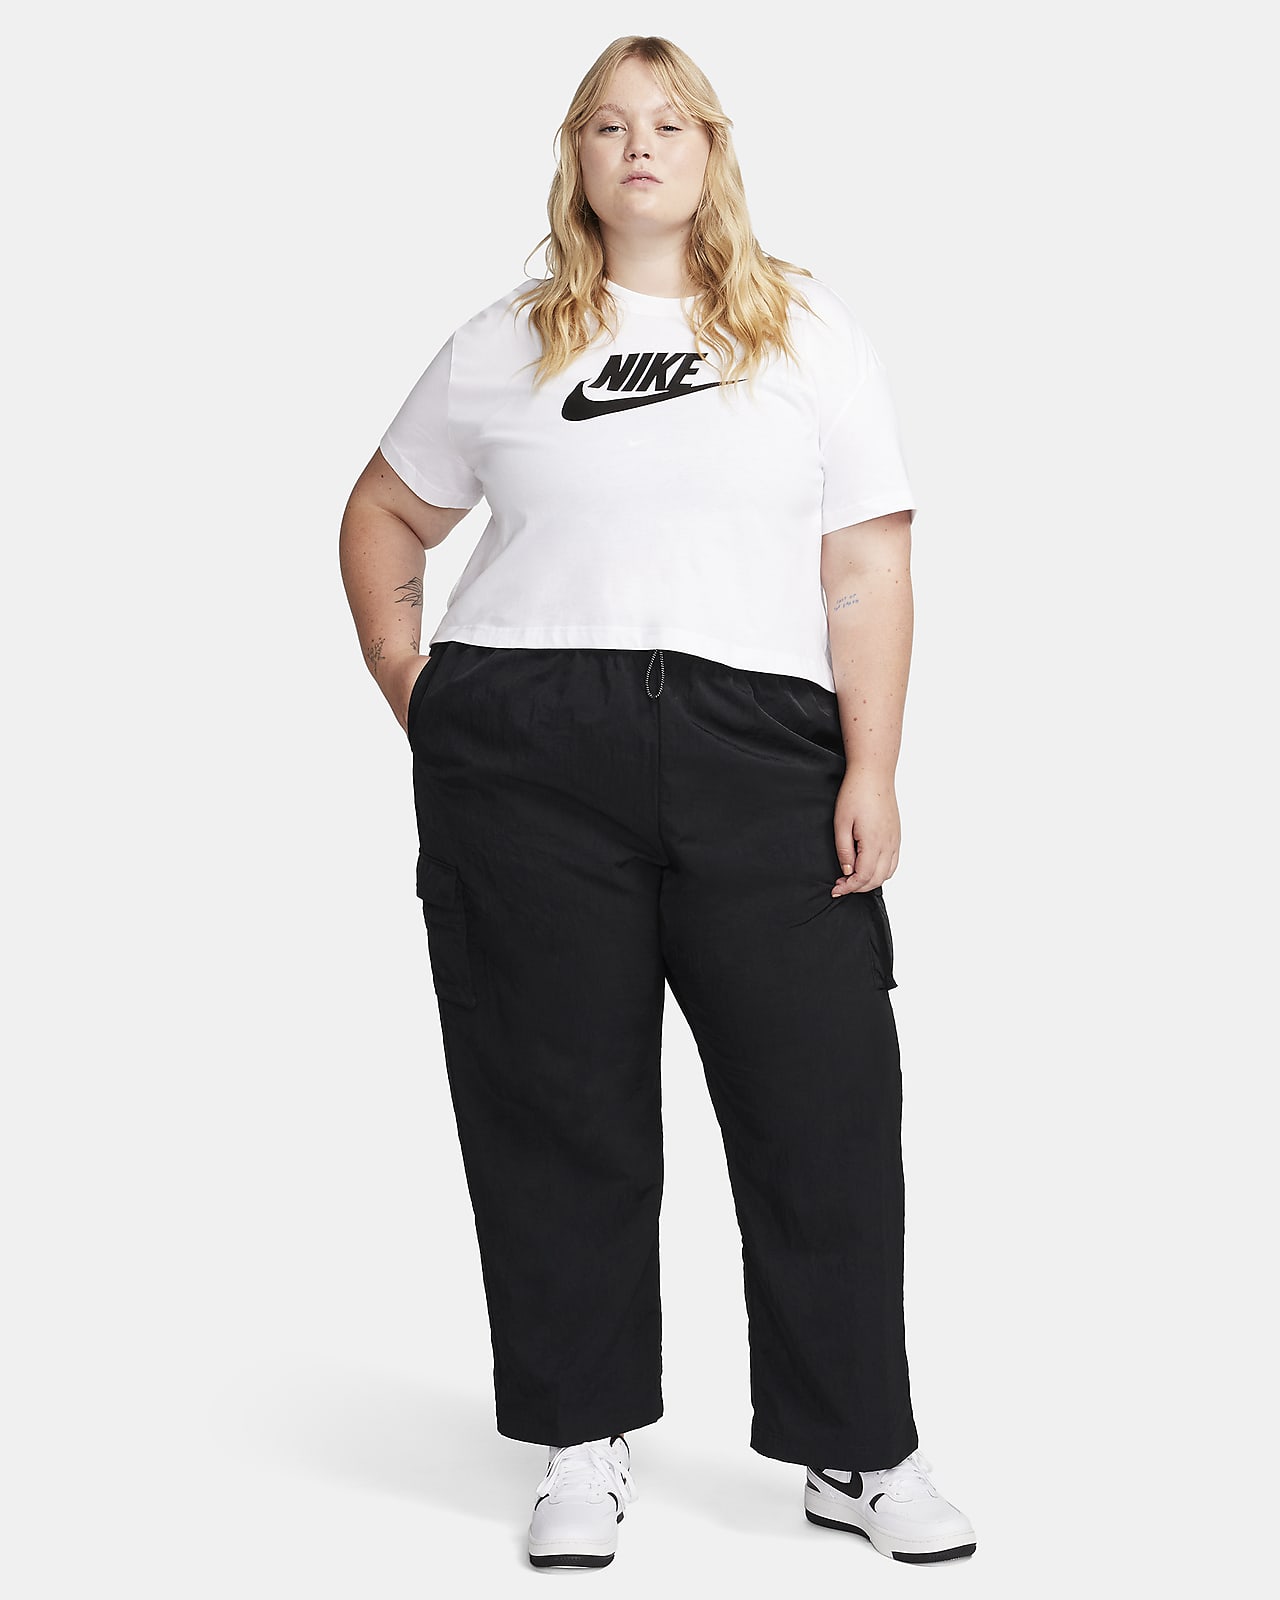 Nike Sportswear Women's High-Rise Pants Black BV2728-010 (Size: XL